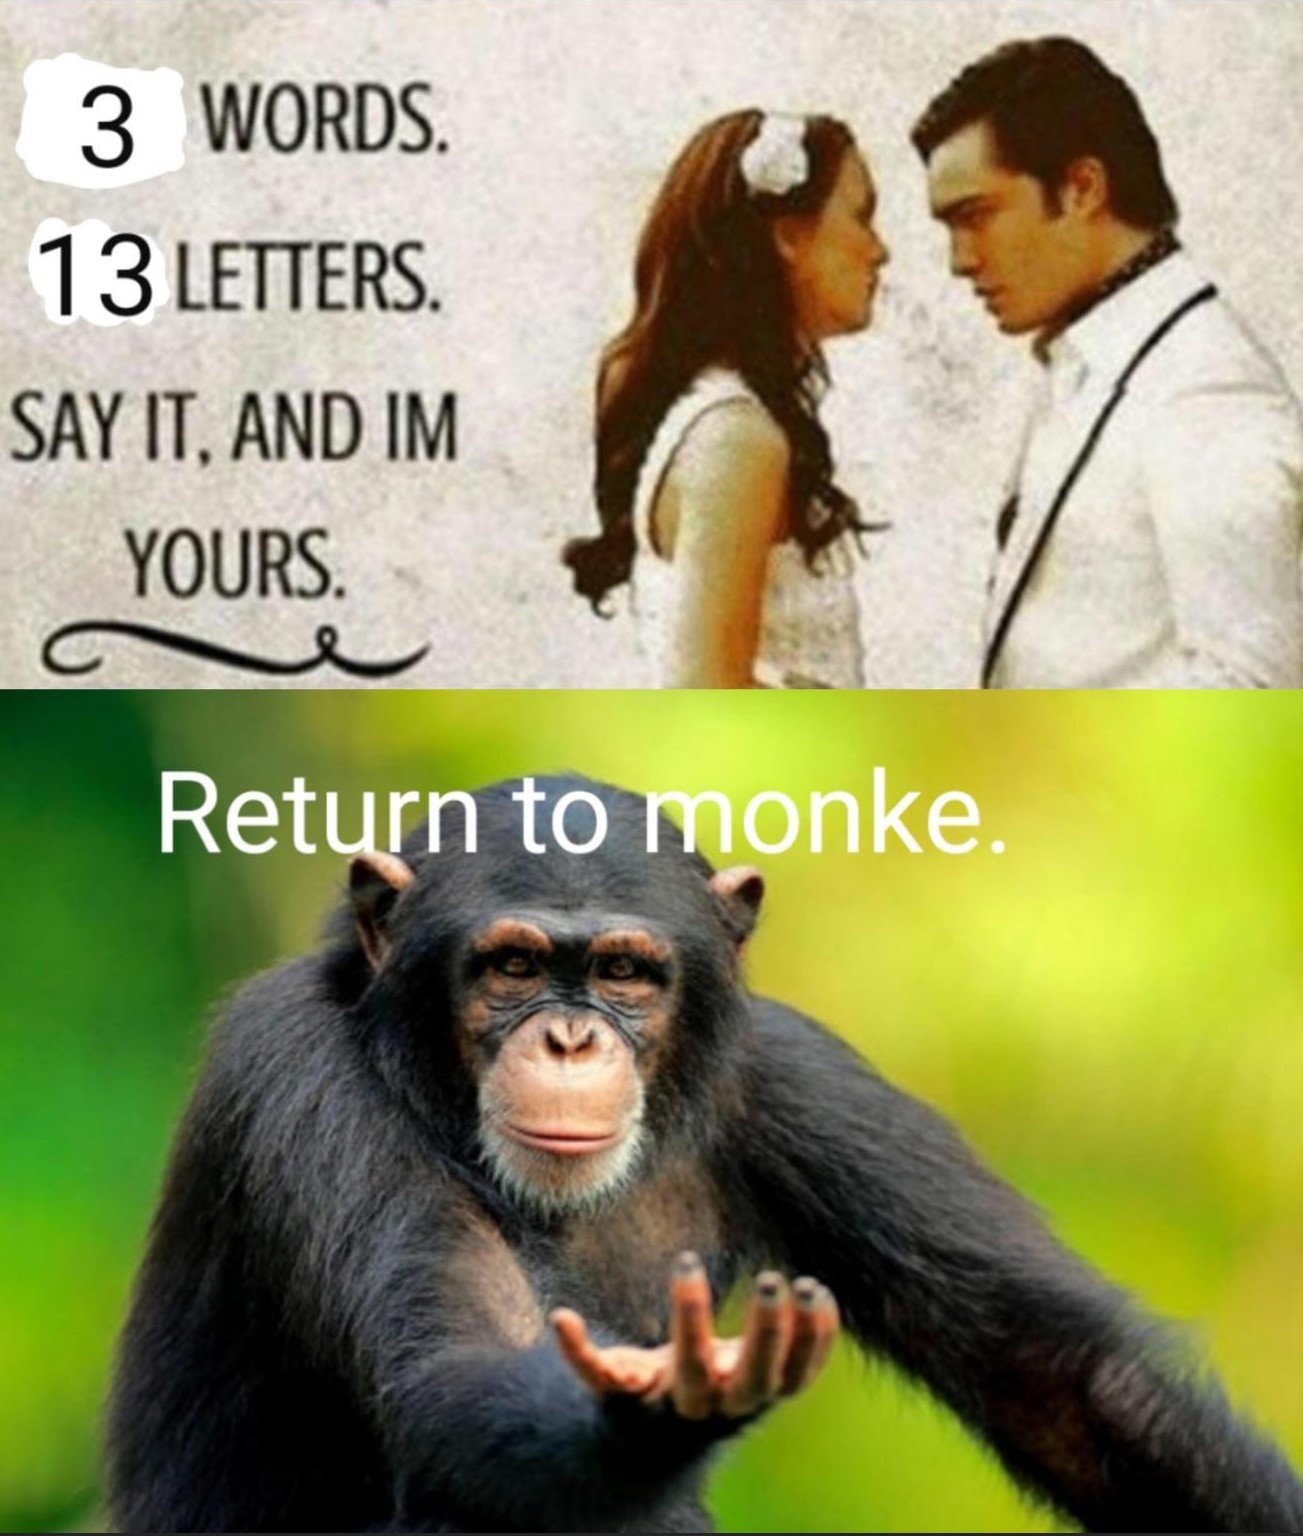 Return to monke - meme